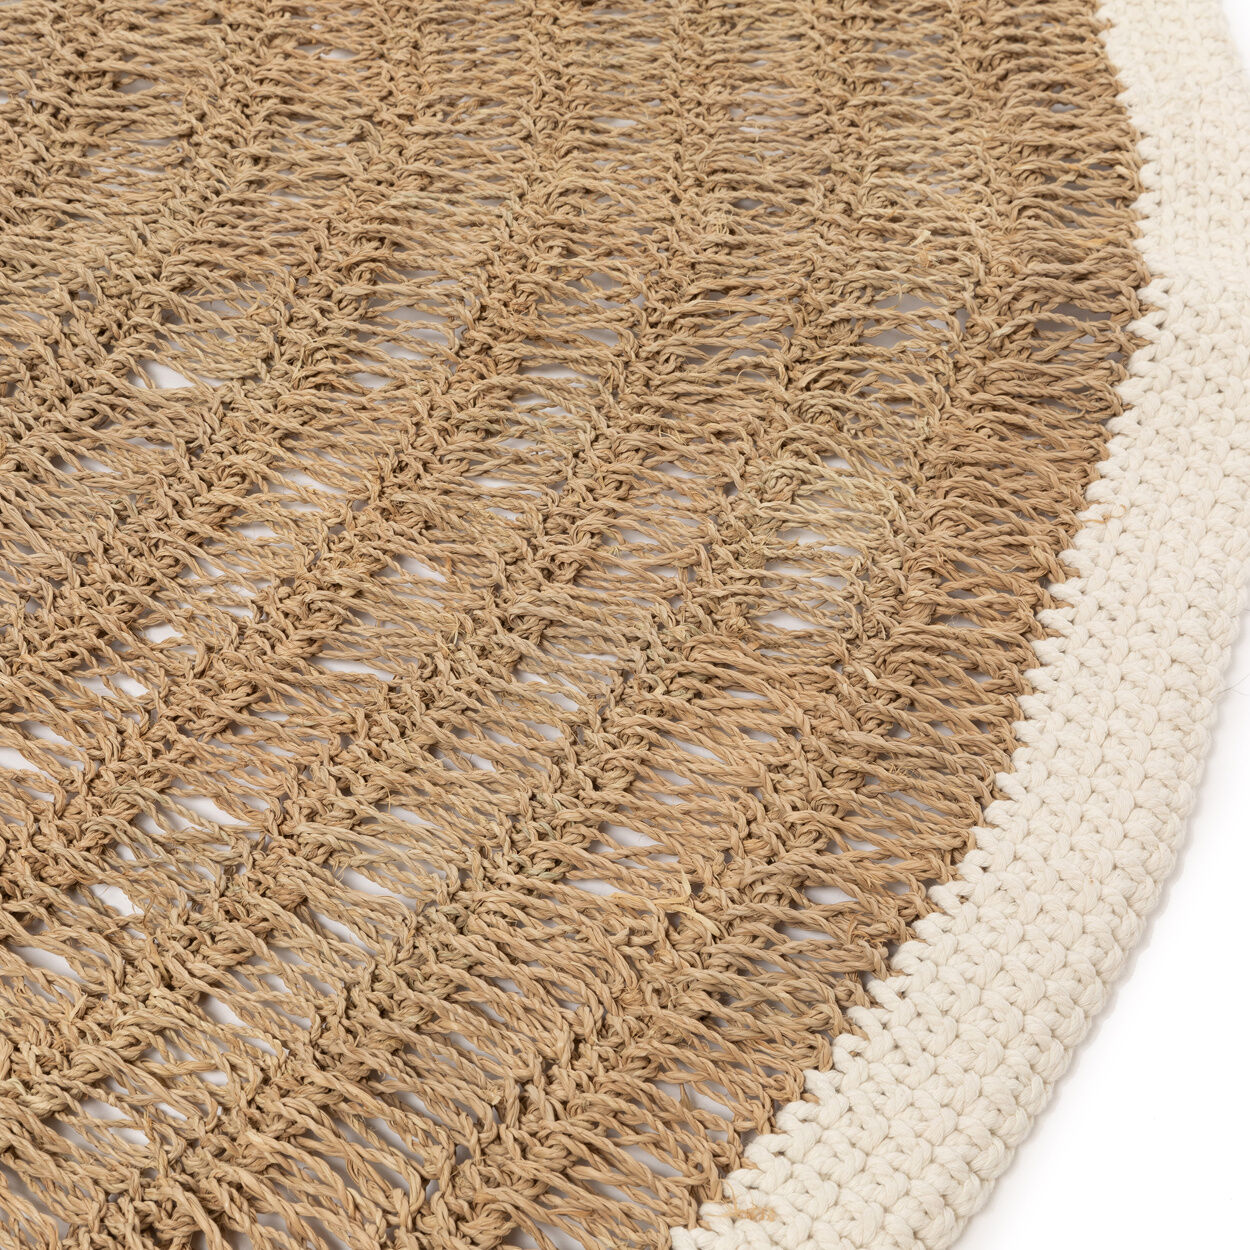 Runder Teppich aus Seegras und Baumwolle – Natur / Weiß – 150